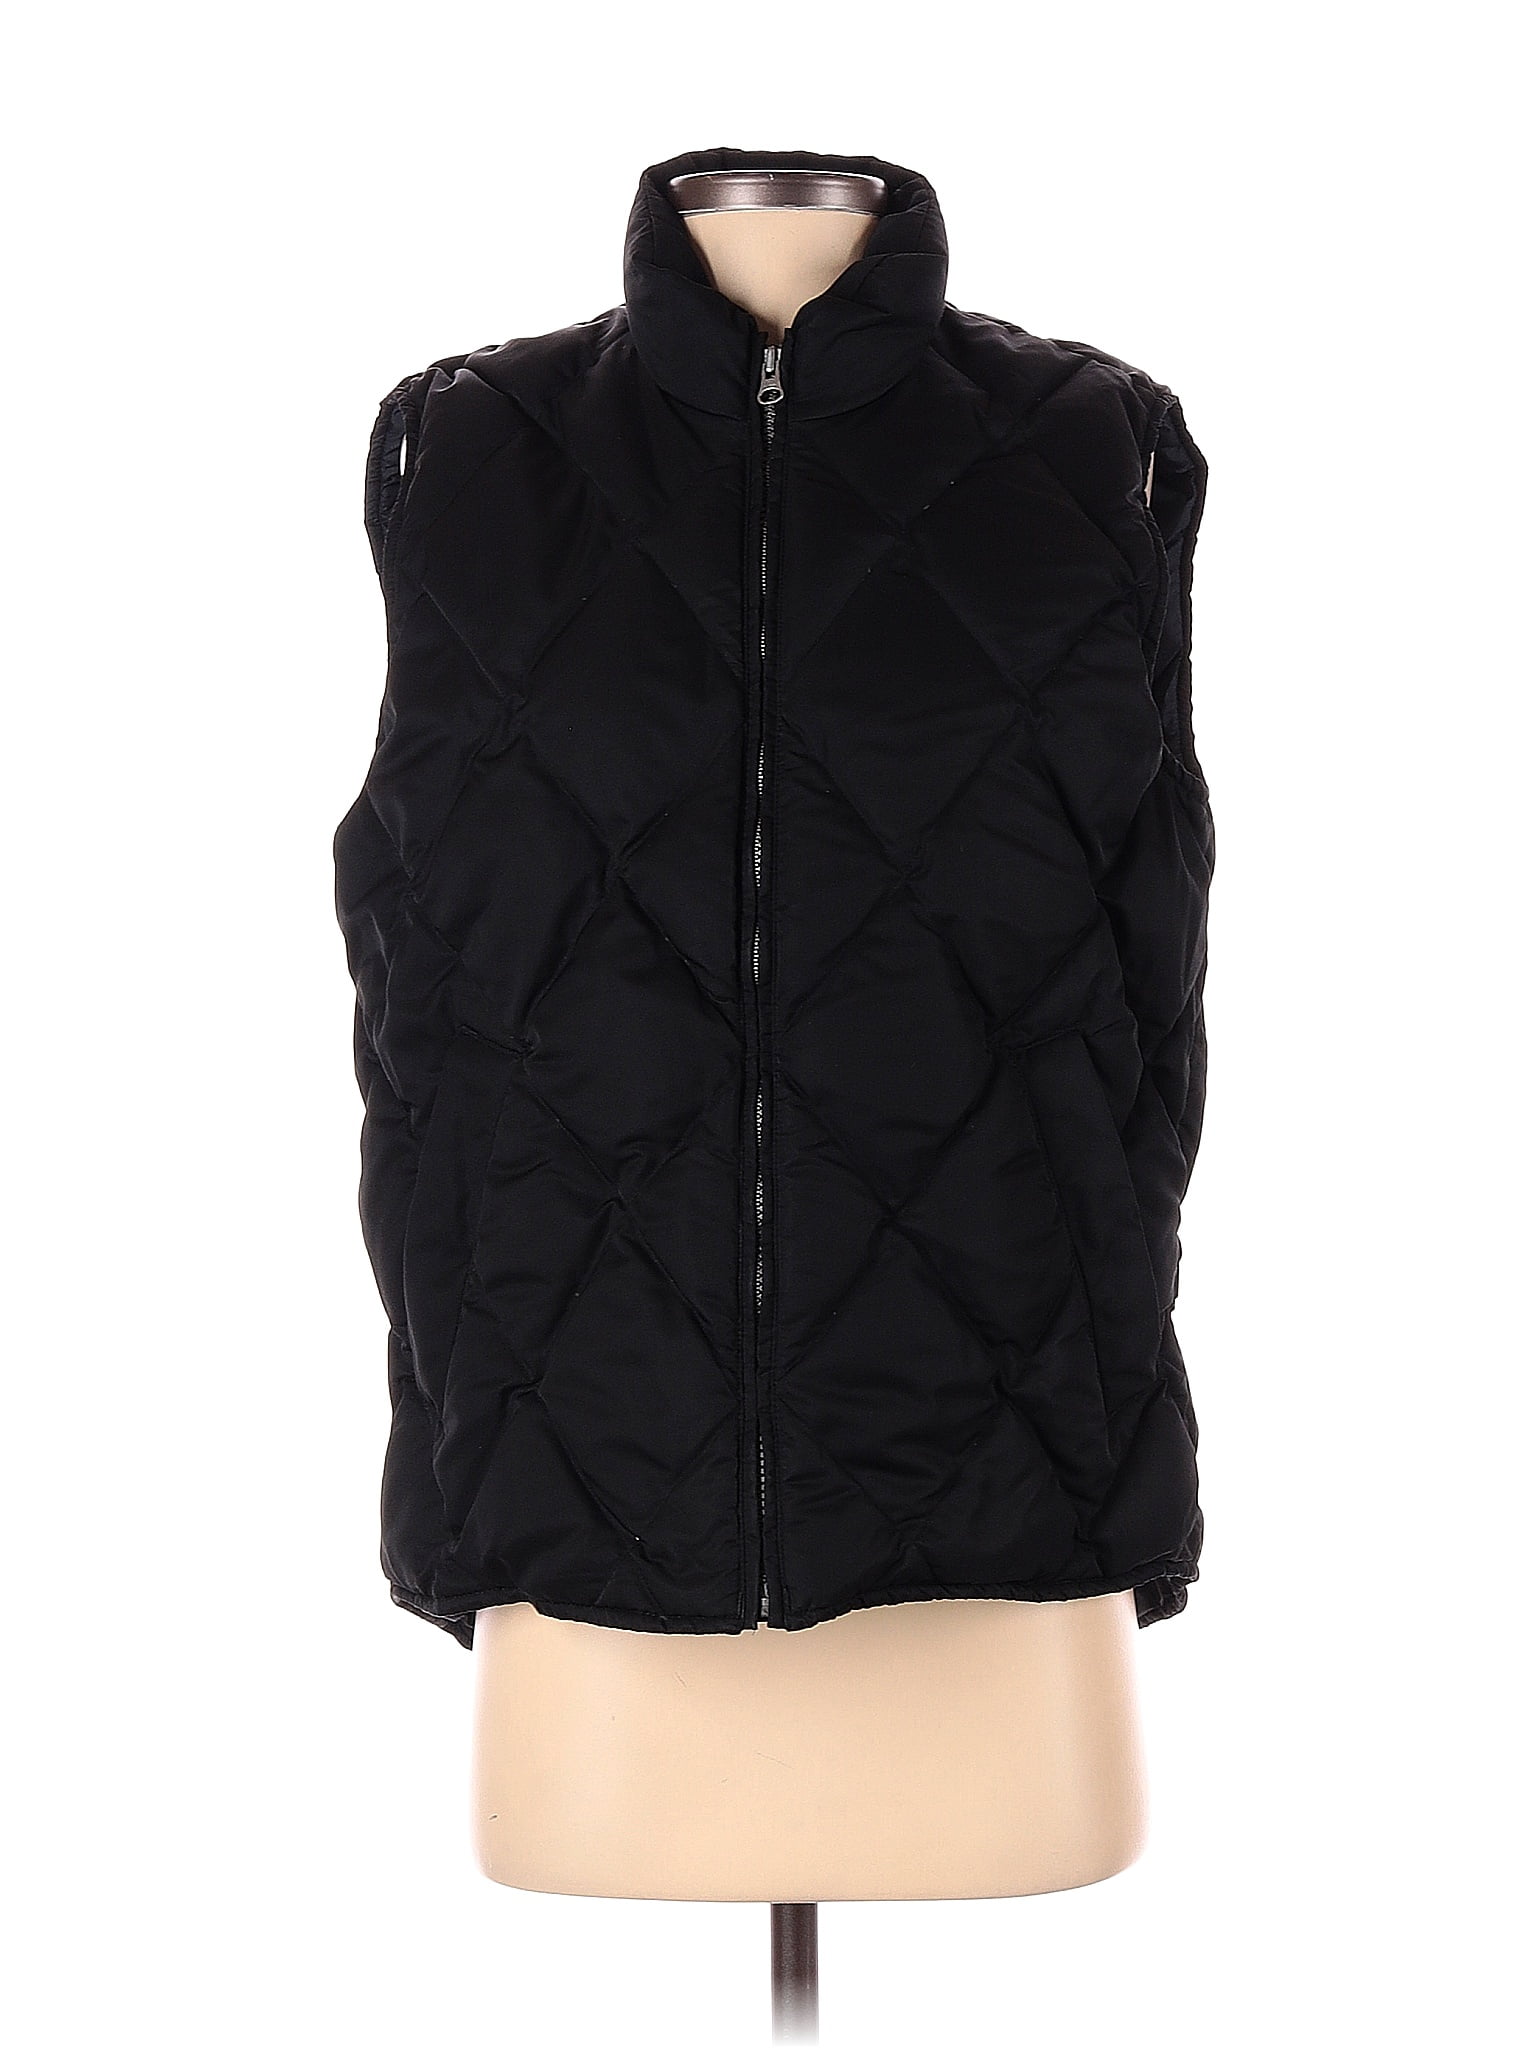 Eddie Bauer 100% Nylon Black Vest Size XS - 67% off | thredUP